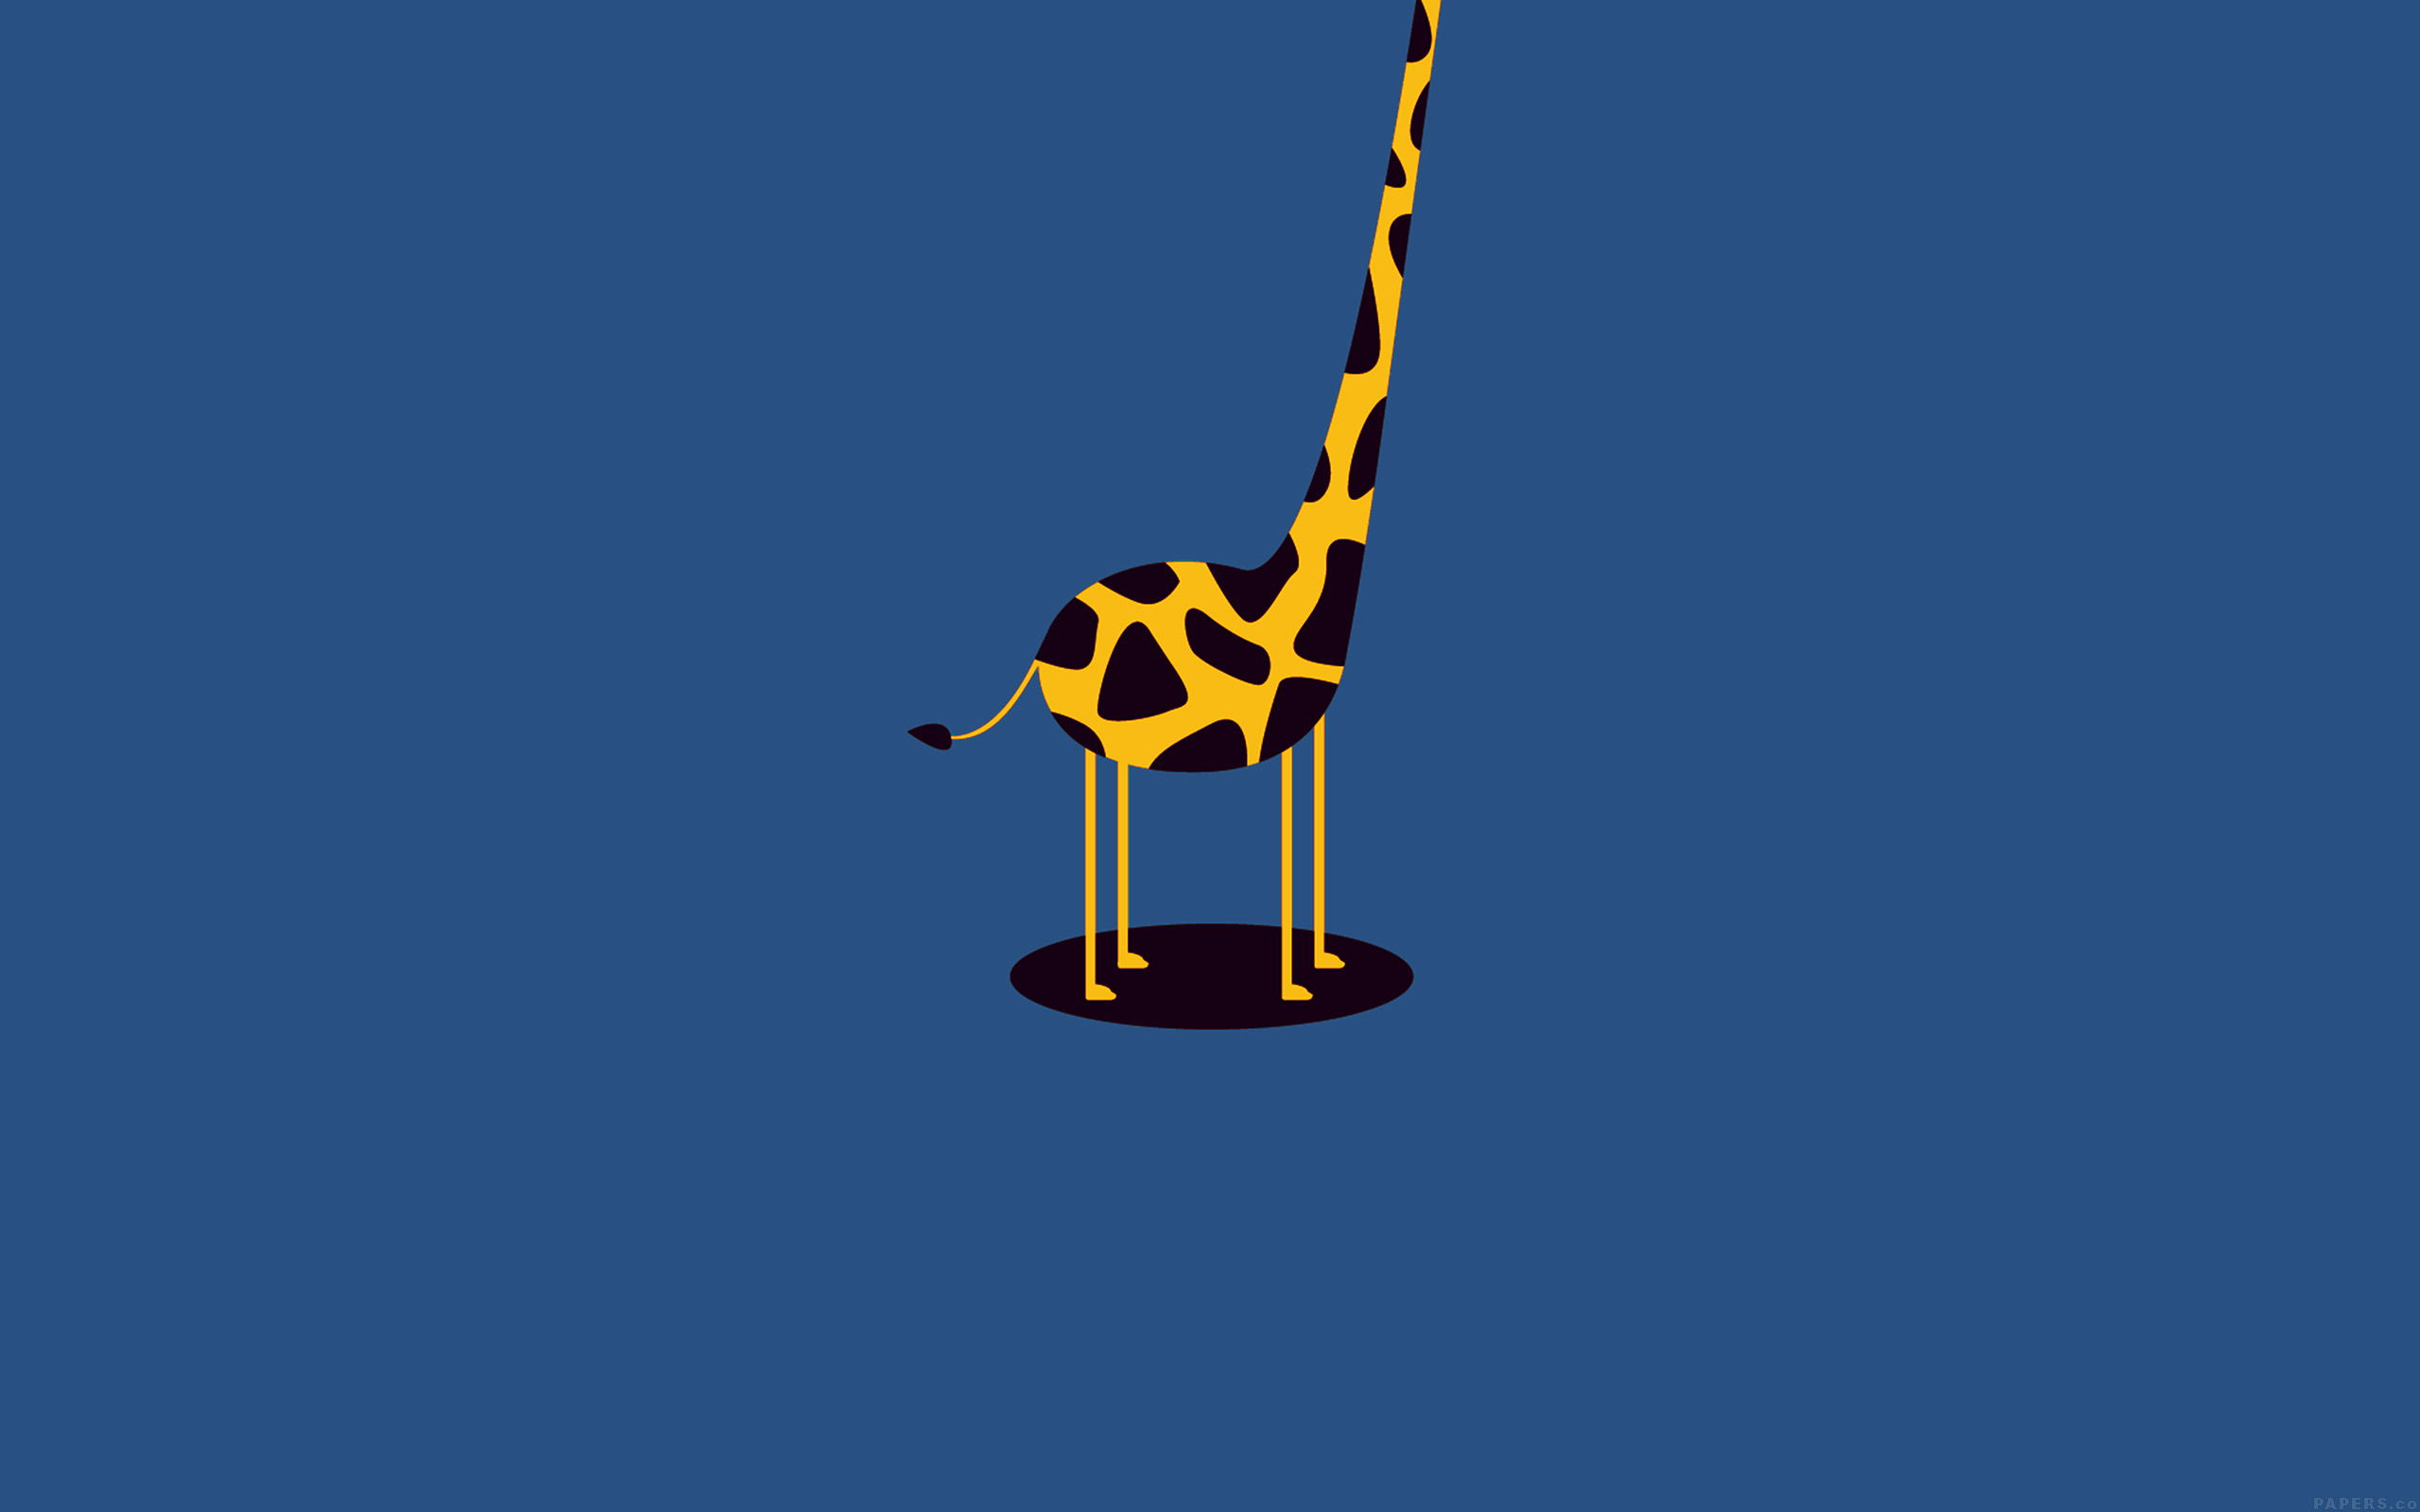 süße und einfache tapete,giraffe,giraffidae,flagge